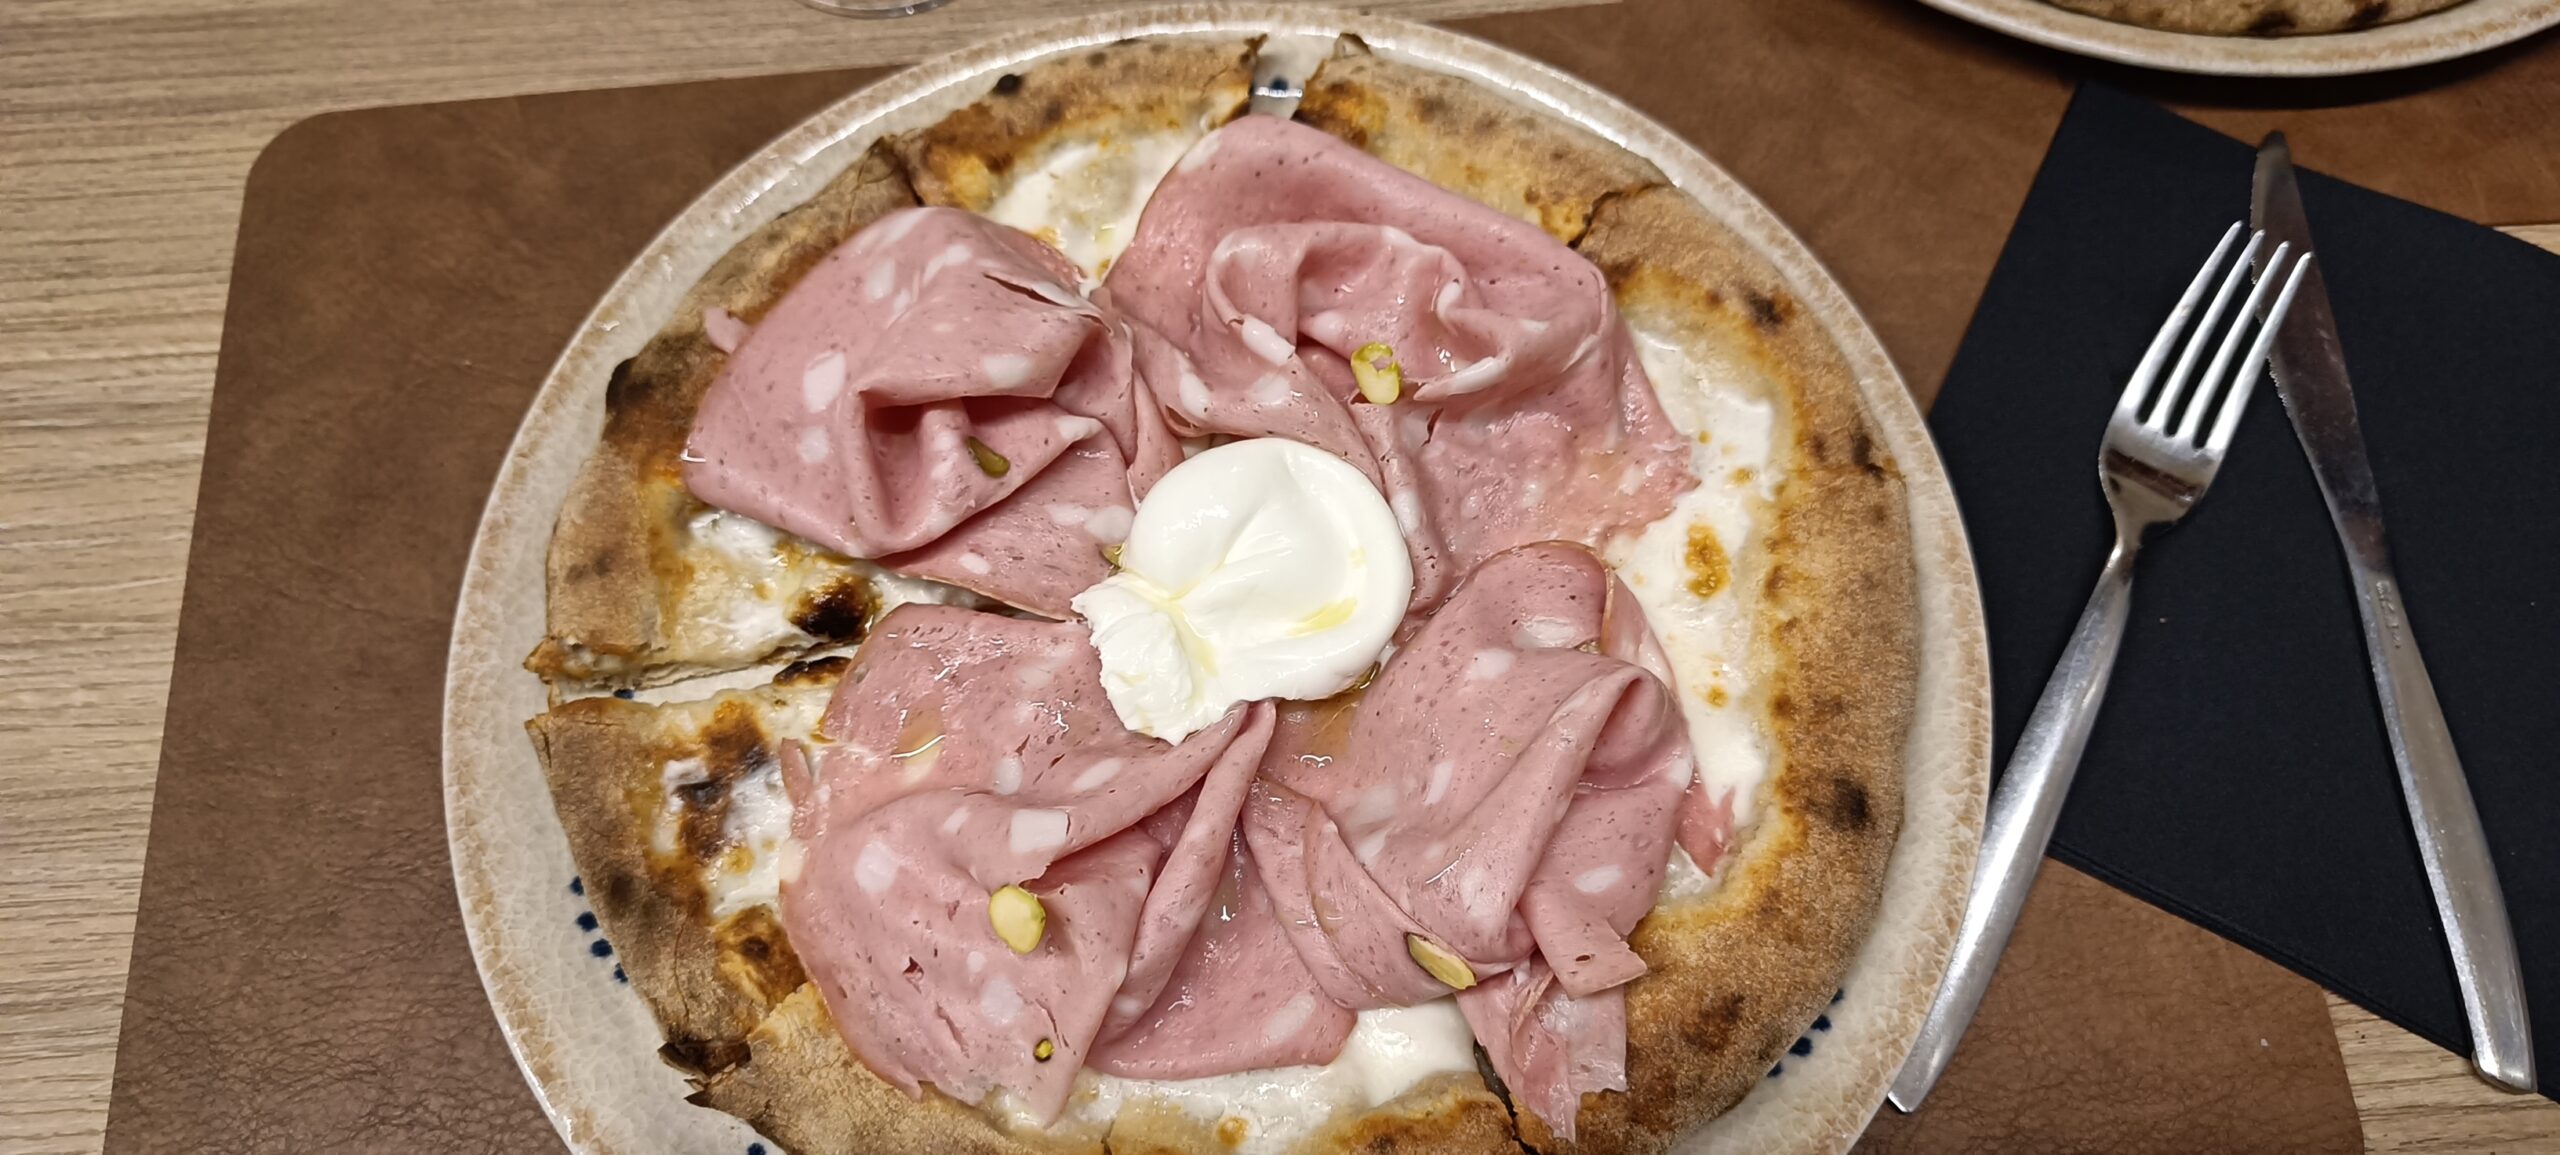 pizza palermo